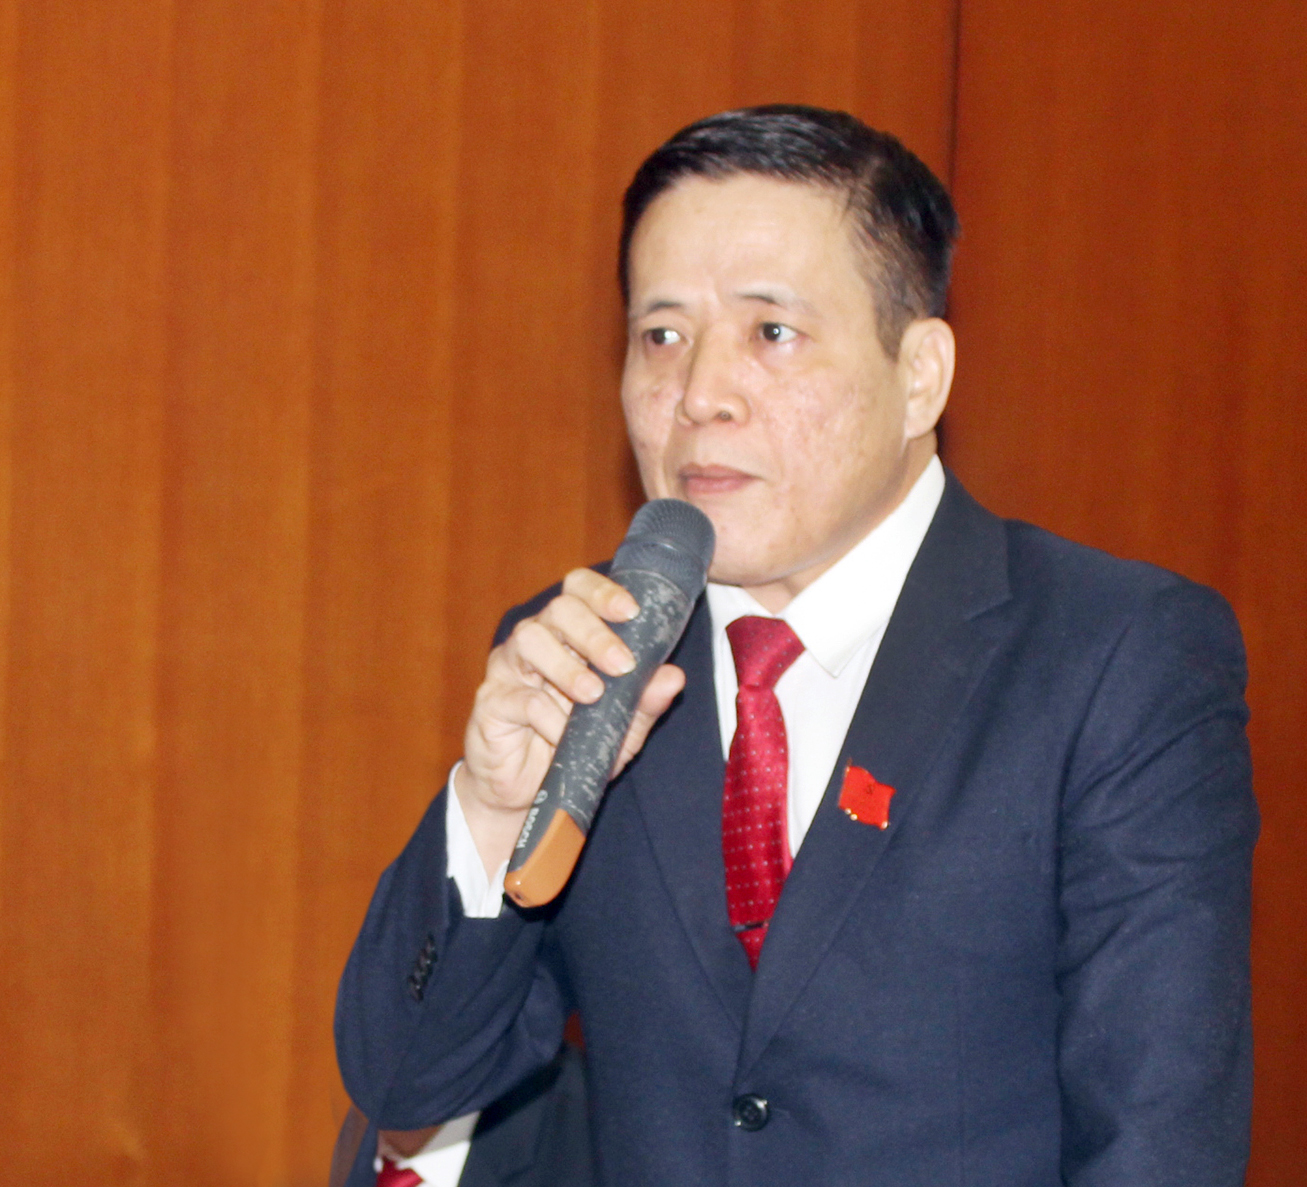 Đồng chí Trần Ngọc Hà, Trưởng Ban Tuyên giáo Thành ủy Vũng Tàu phát biểu ý kiến về công tác phát triển Đảng.